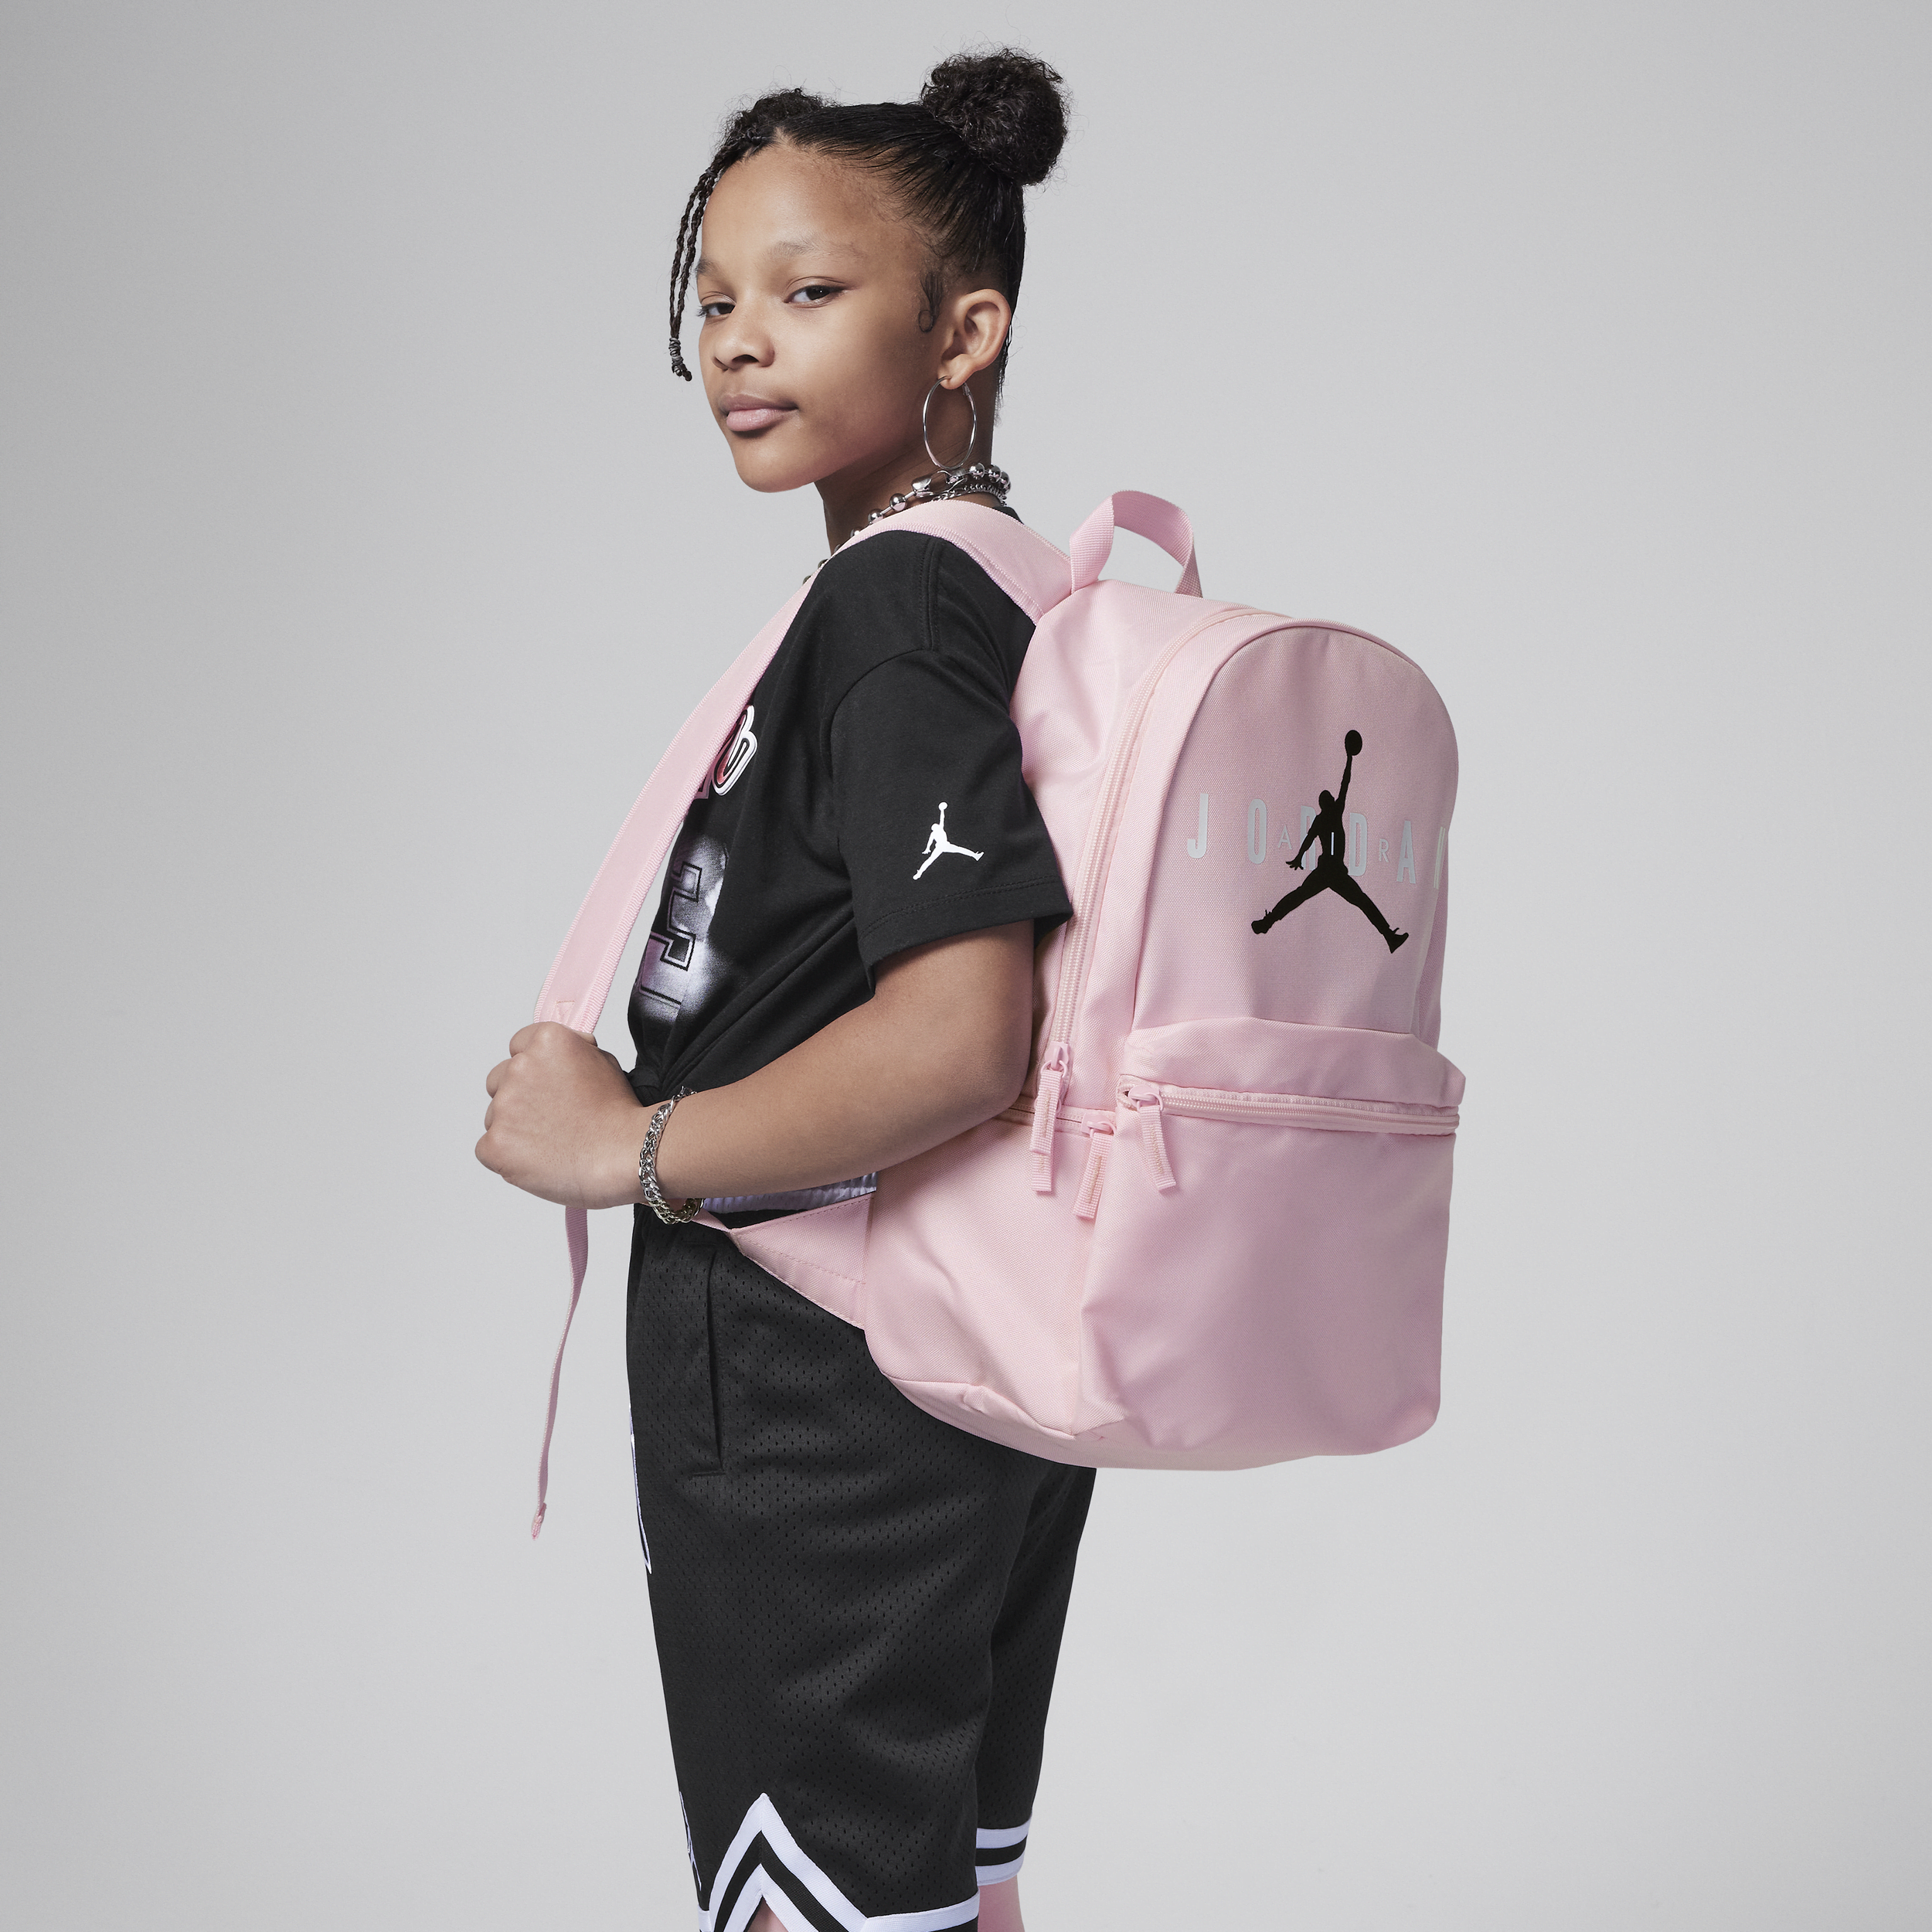 Jordan Eco Daypack rugzak voor kids (19 liter) - Roze